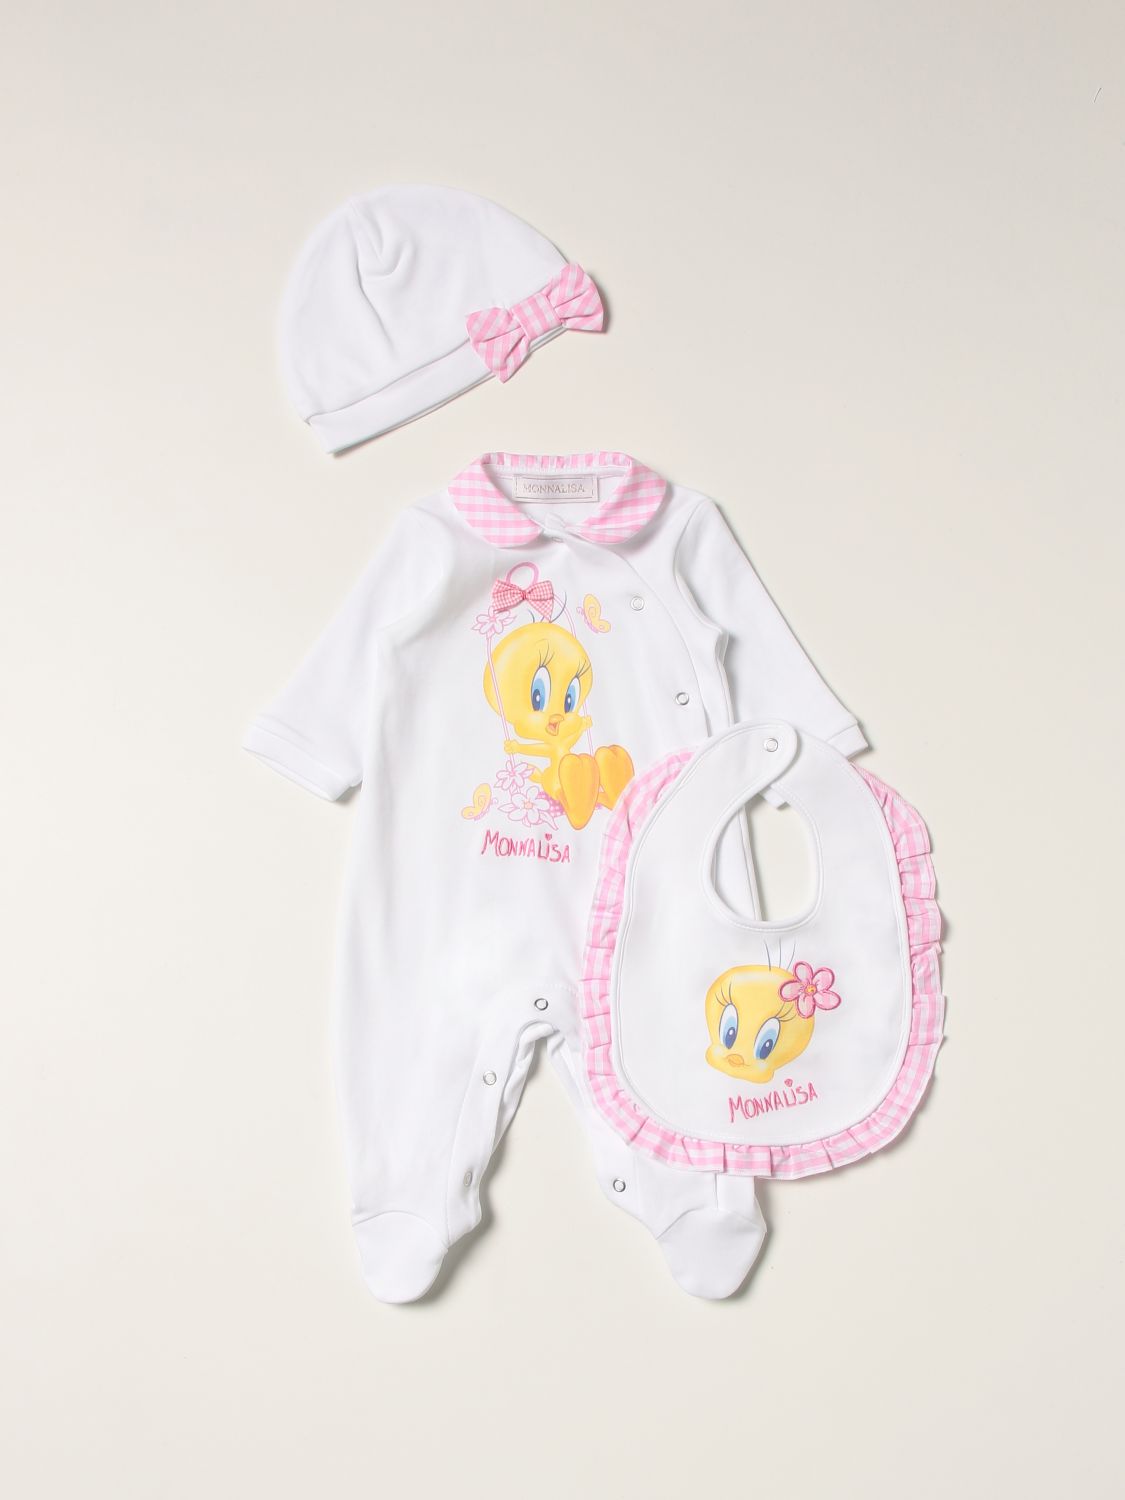 婴儿全身套装 Monnalisa: Monnalisa婴儿全身套装婴儿 白色 1